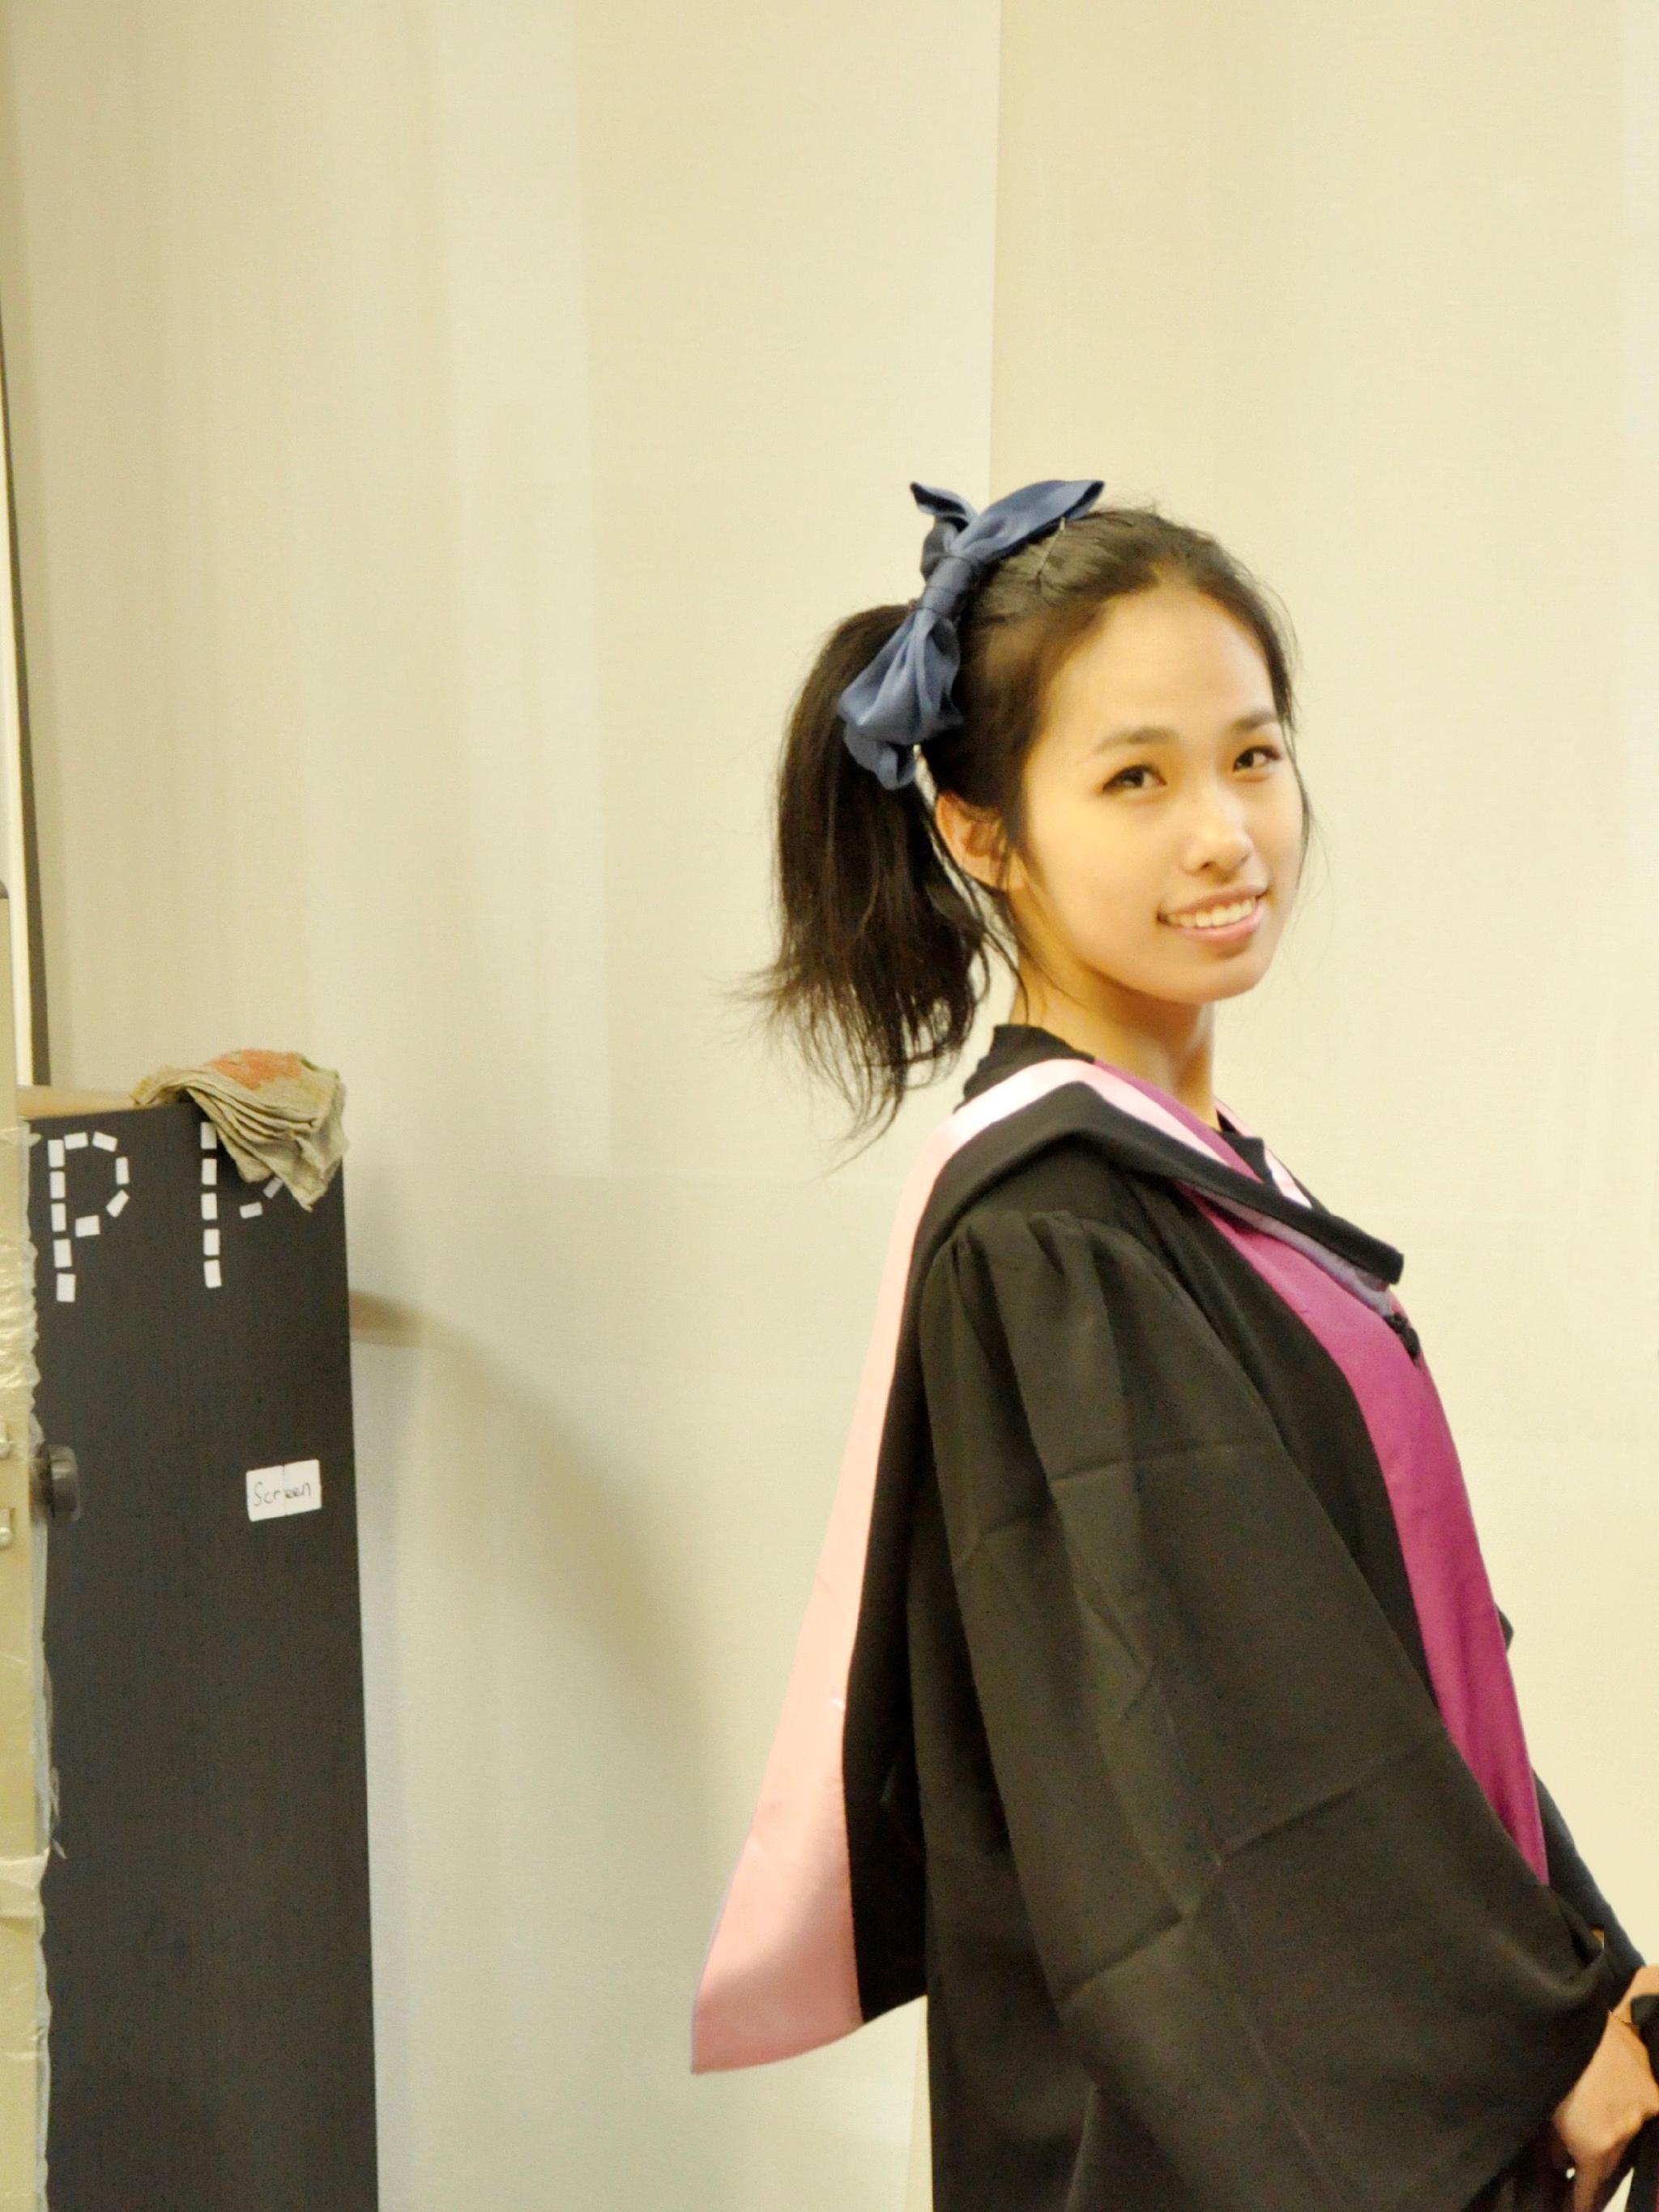 韩双淼的本科毕业照。本文图片均由受访者提供